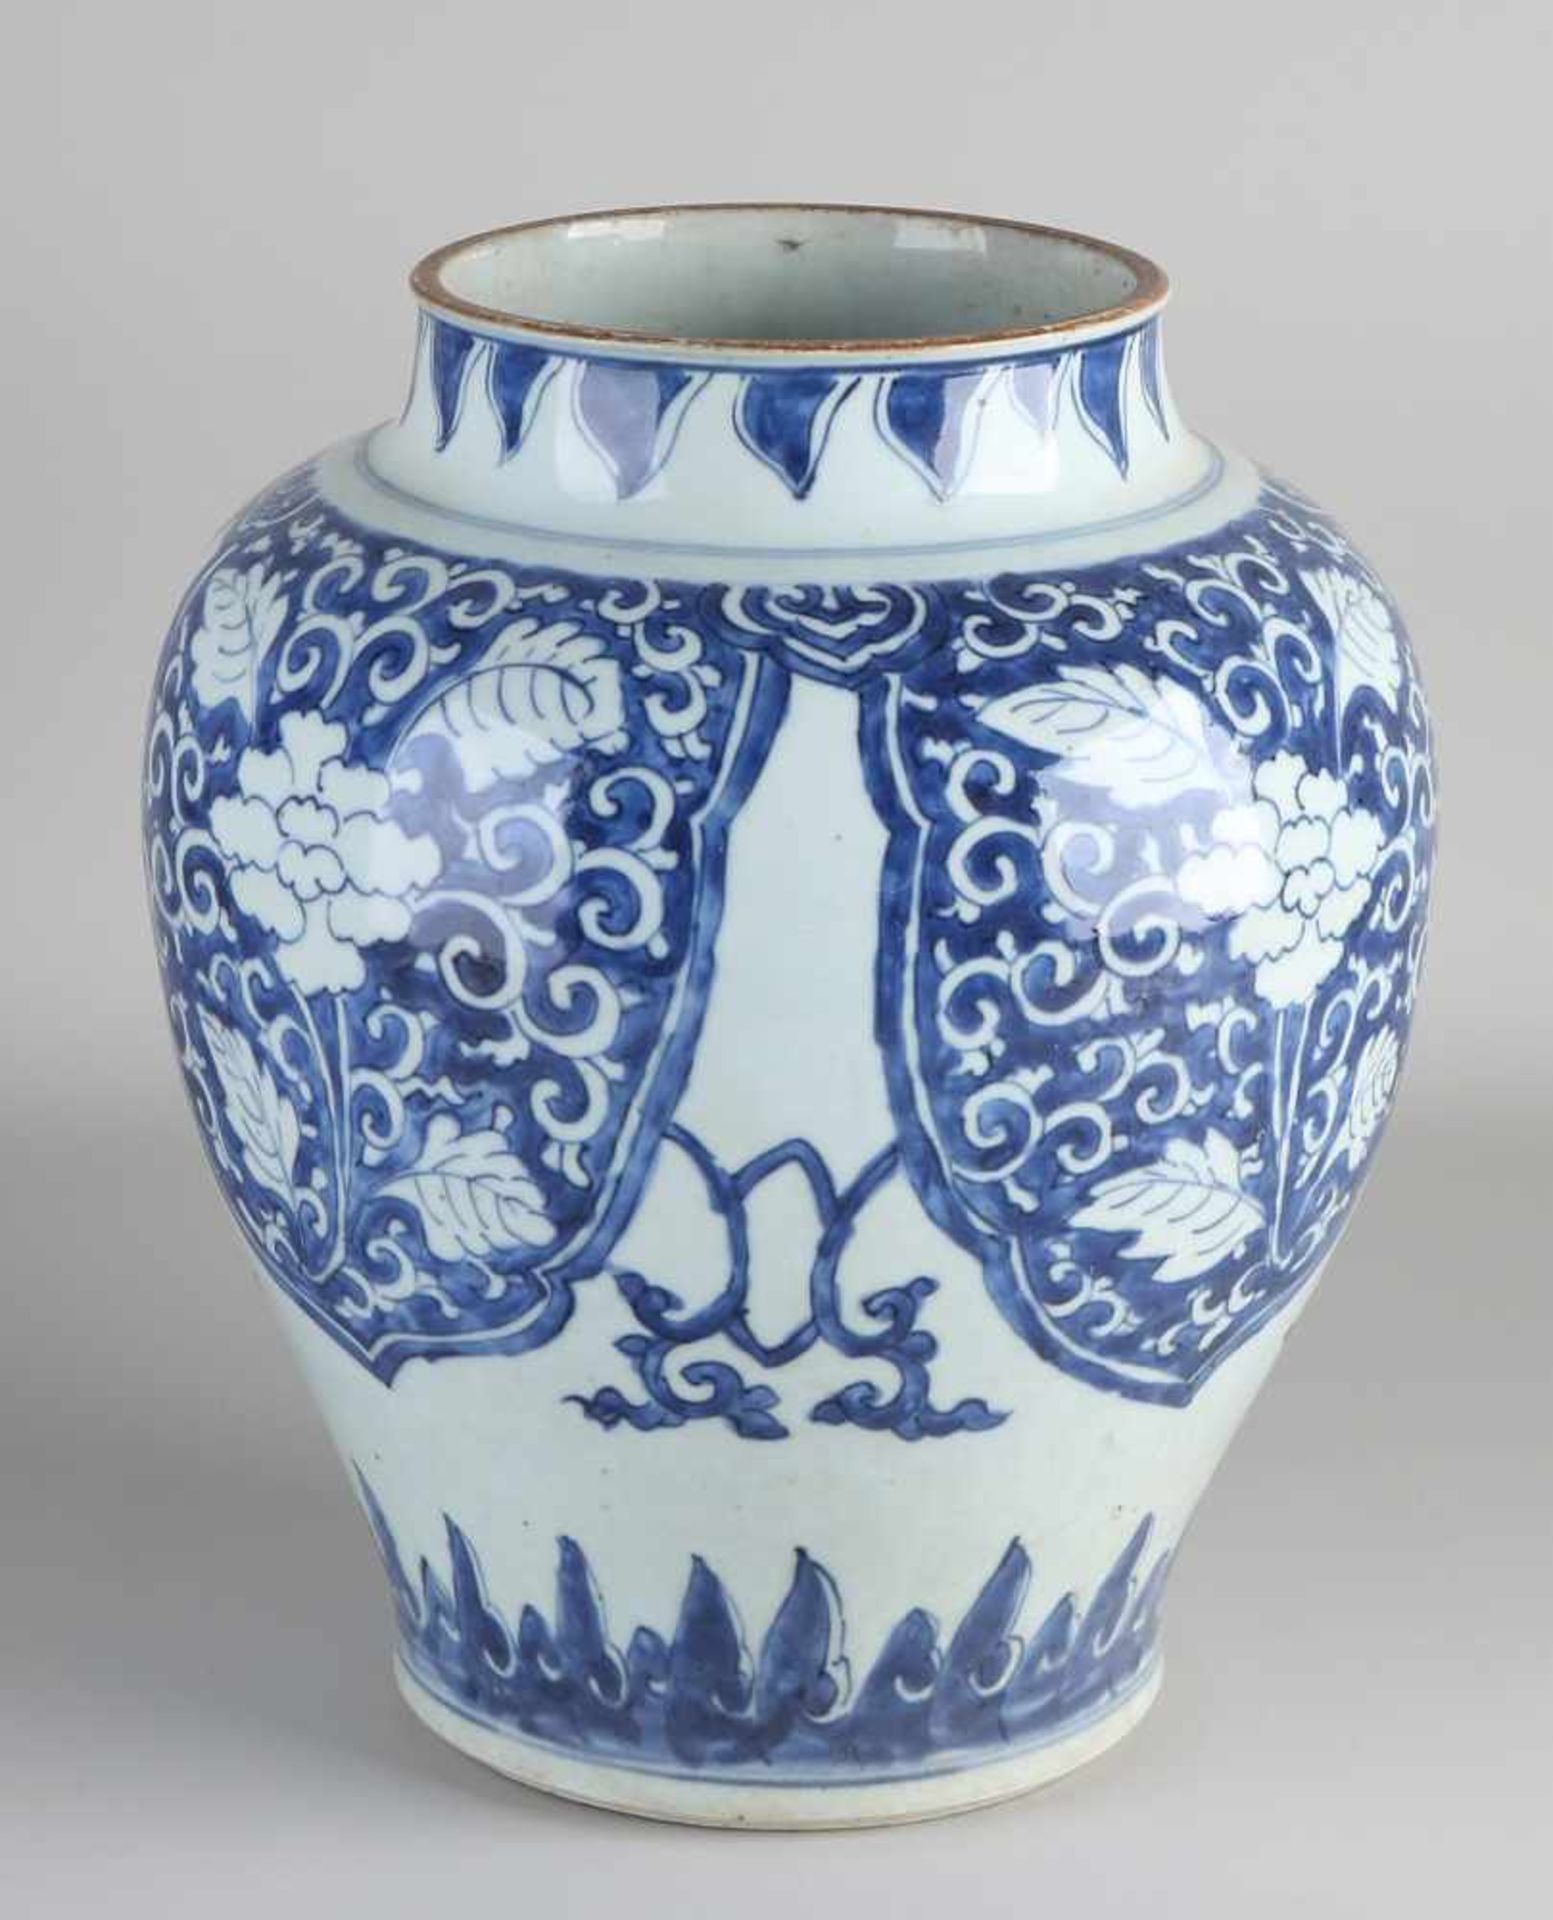 Große blaue und weiße chinesische Porzellanvase aus dem 17. Jahrhundert mit Blumendekor. - Bild 2 aus 3